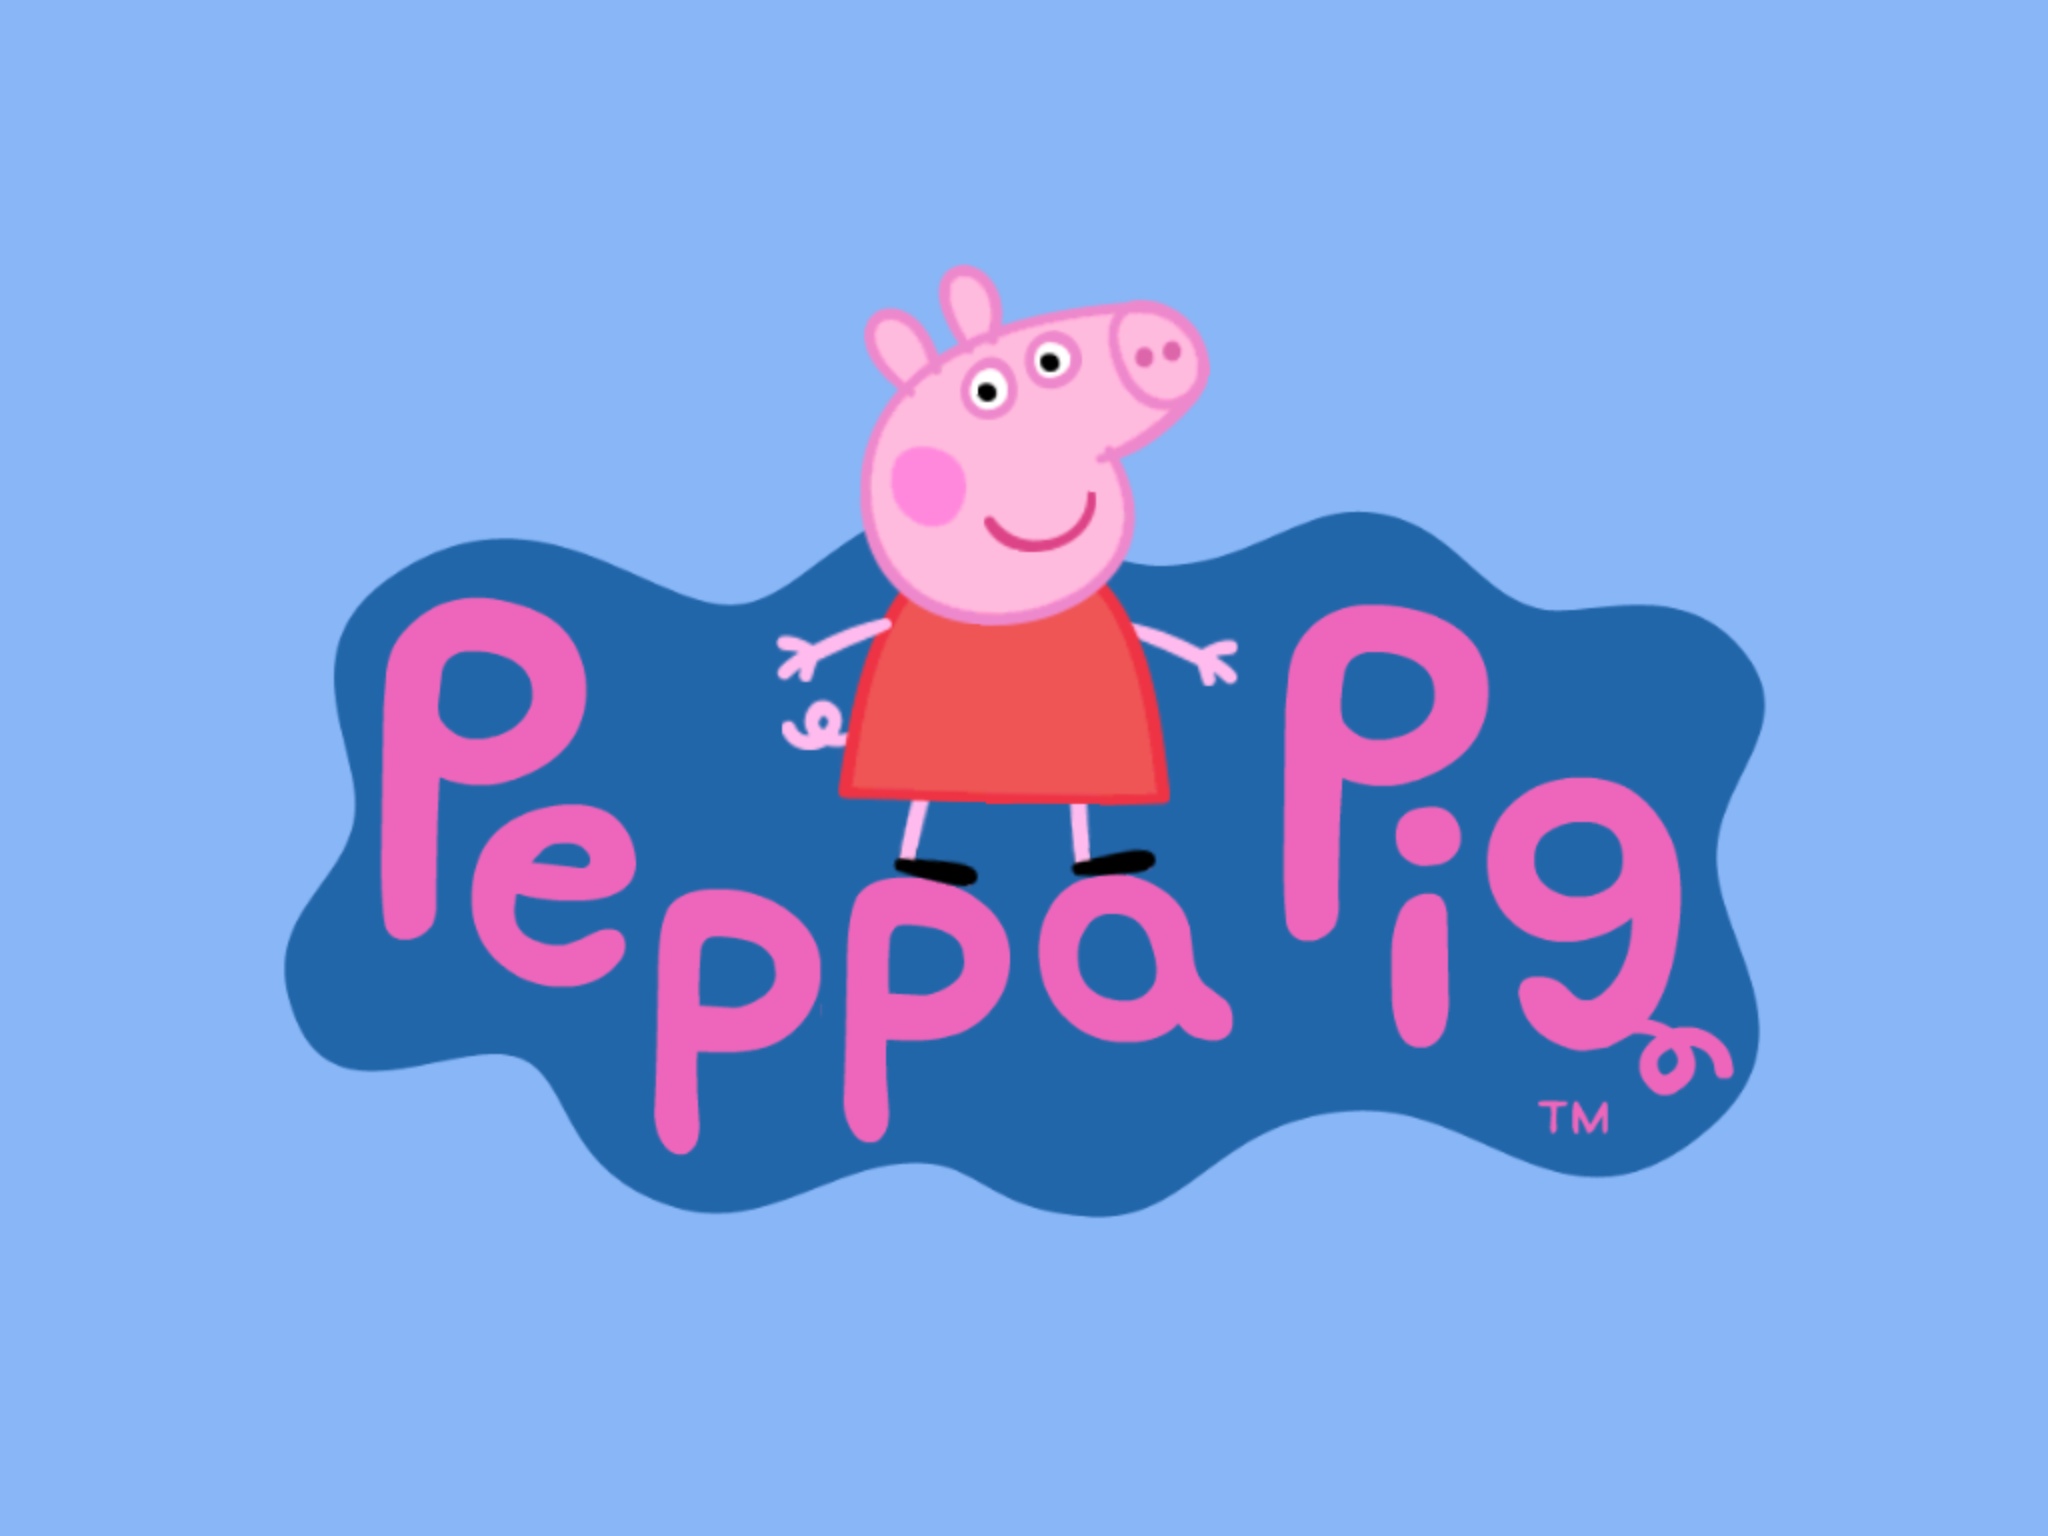 49+] Peppa Pig Wallpaper - WallpaperSafari